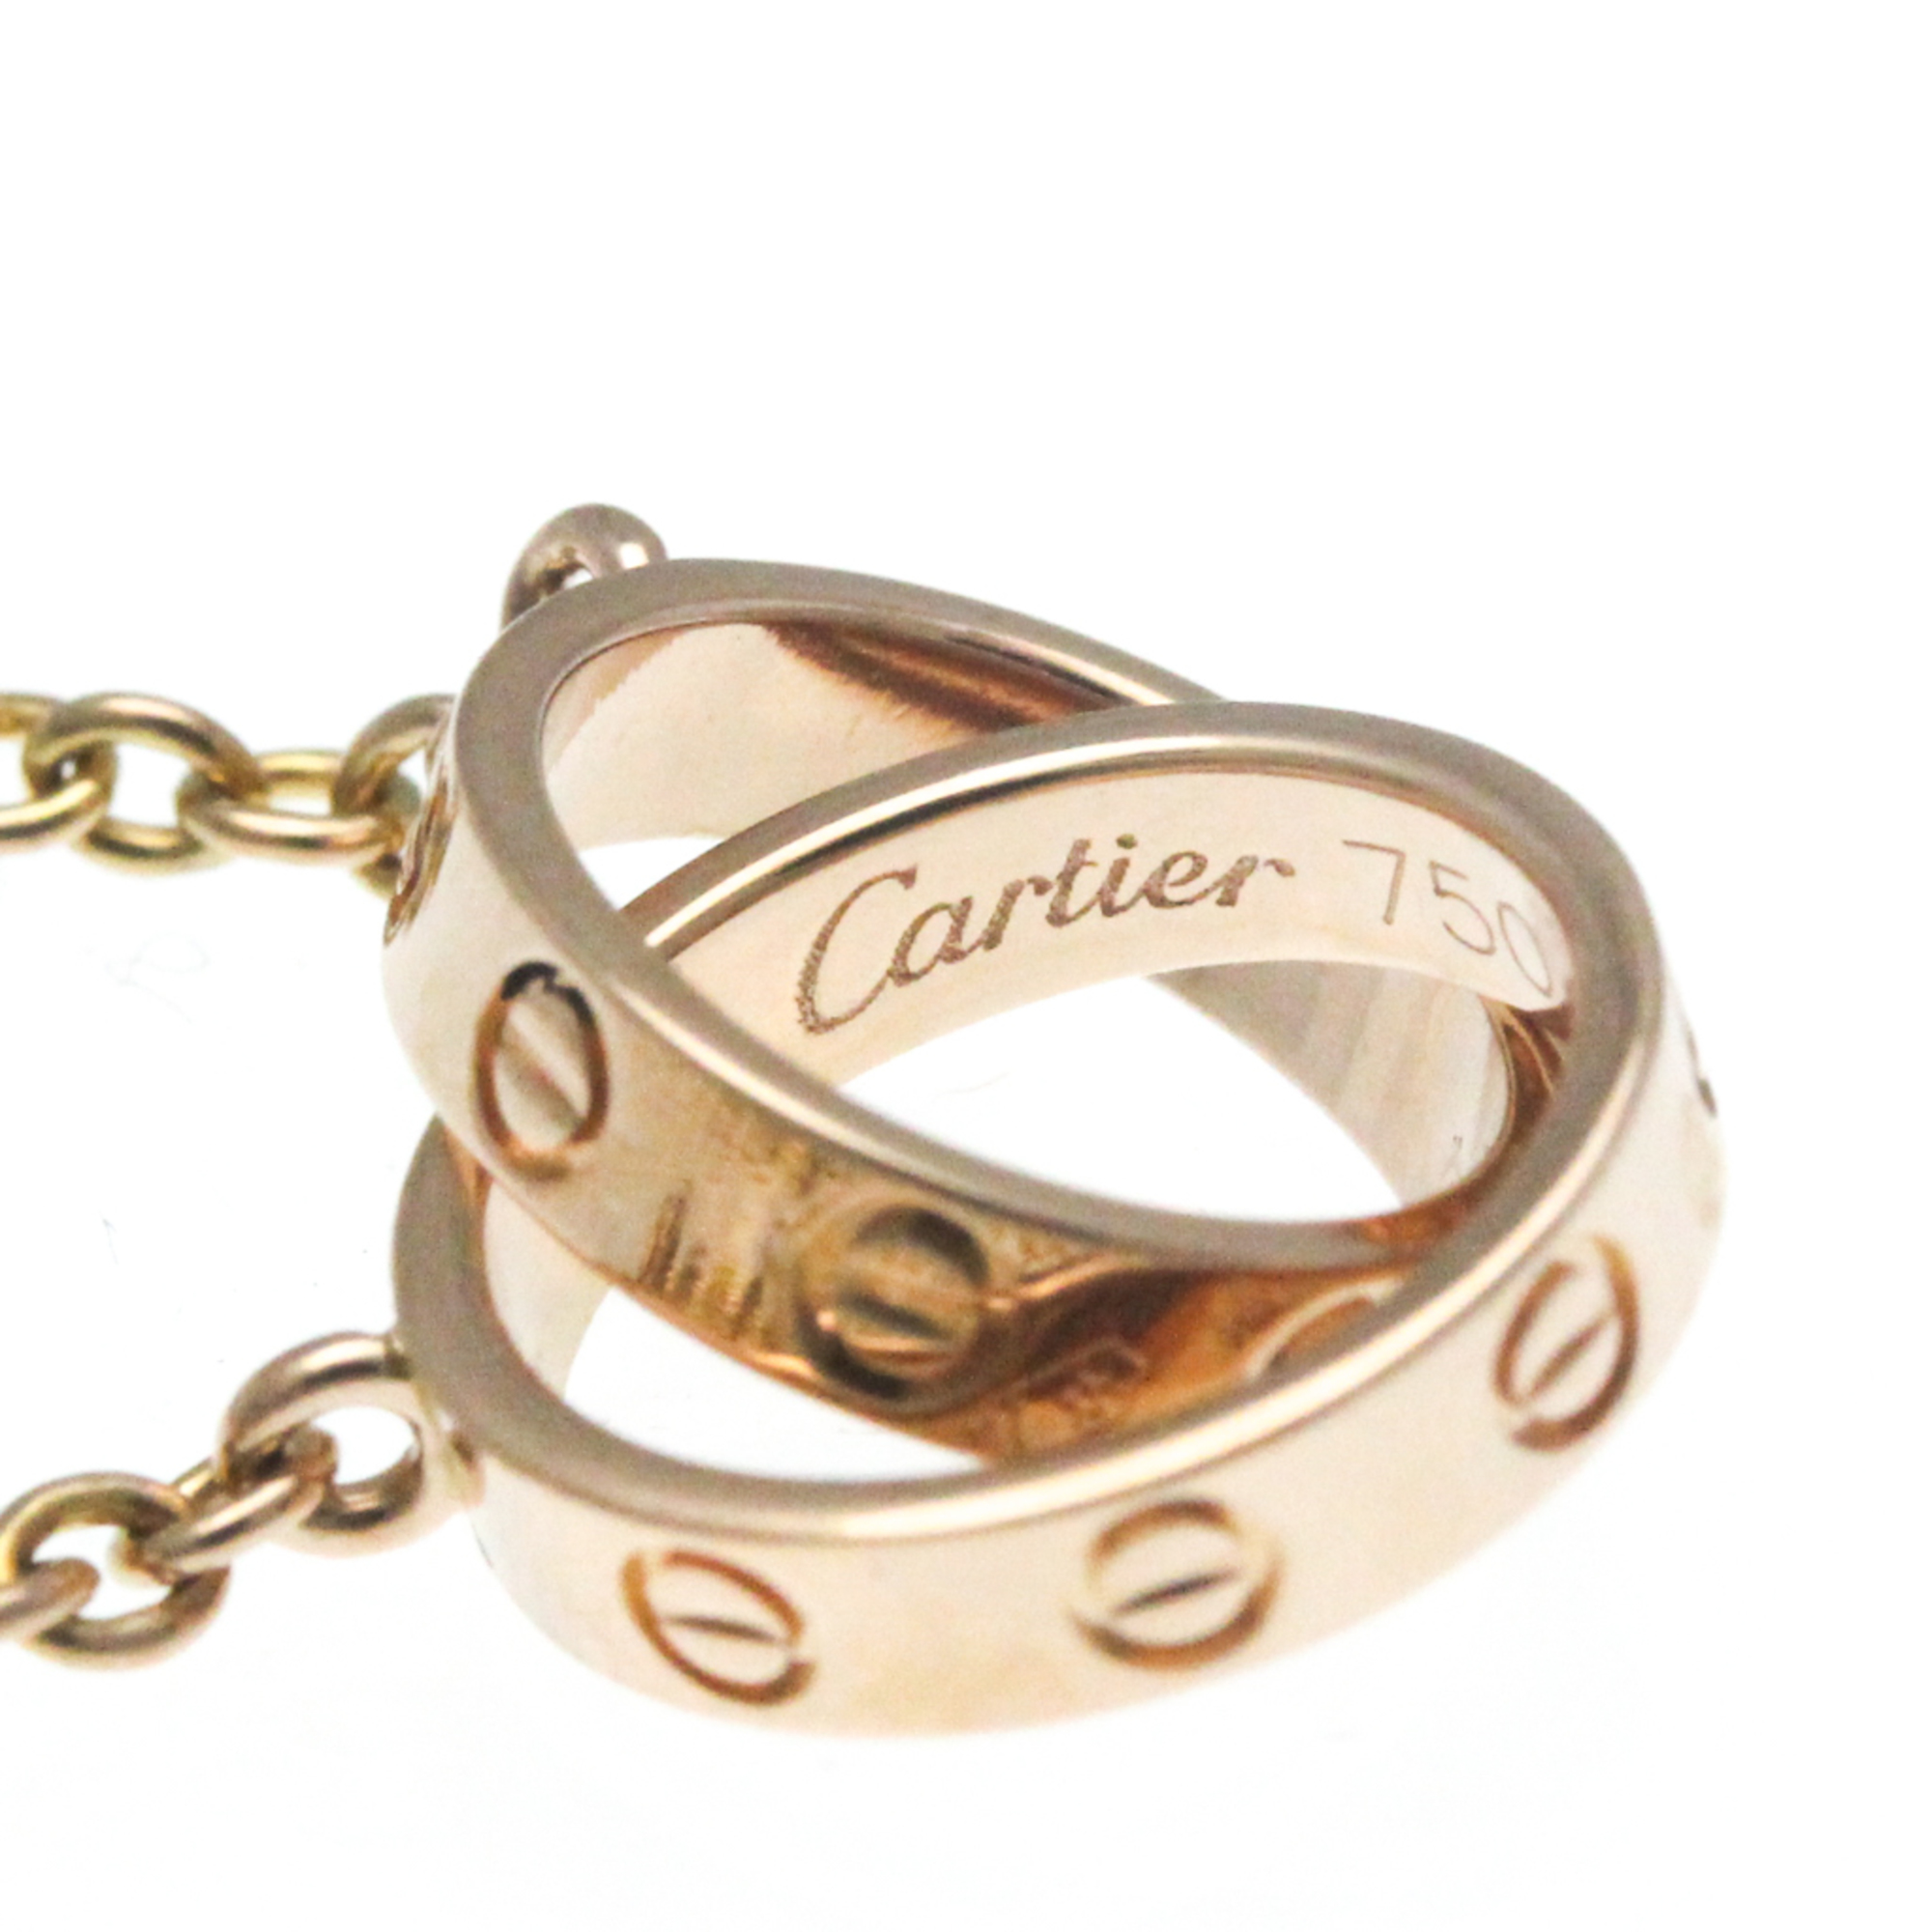 Cartier Baby Love Bracelet Pink Gold (18K) No Stone Charm Bracelet Pink Gold